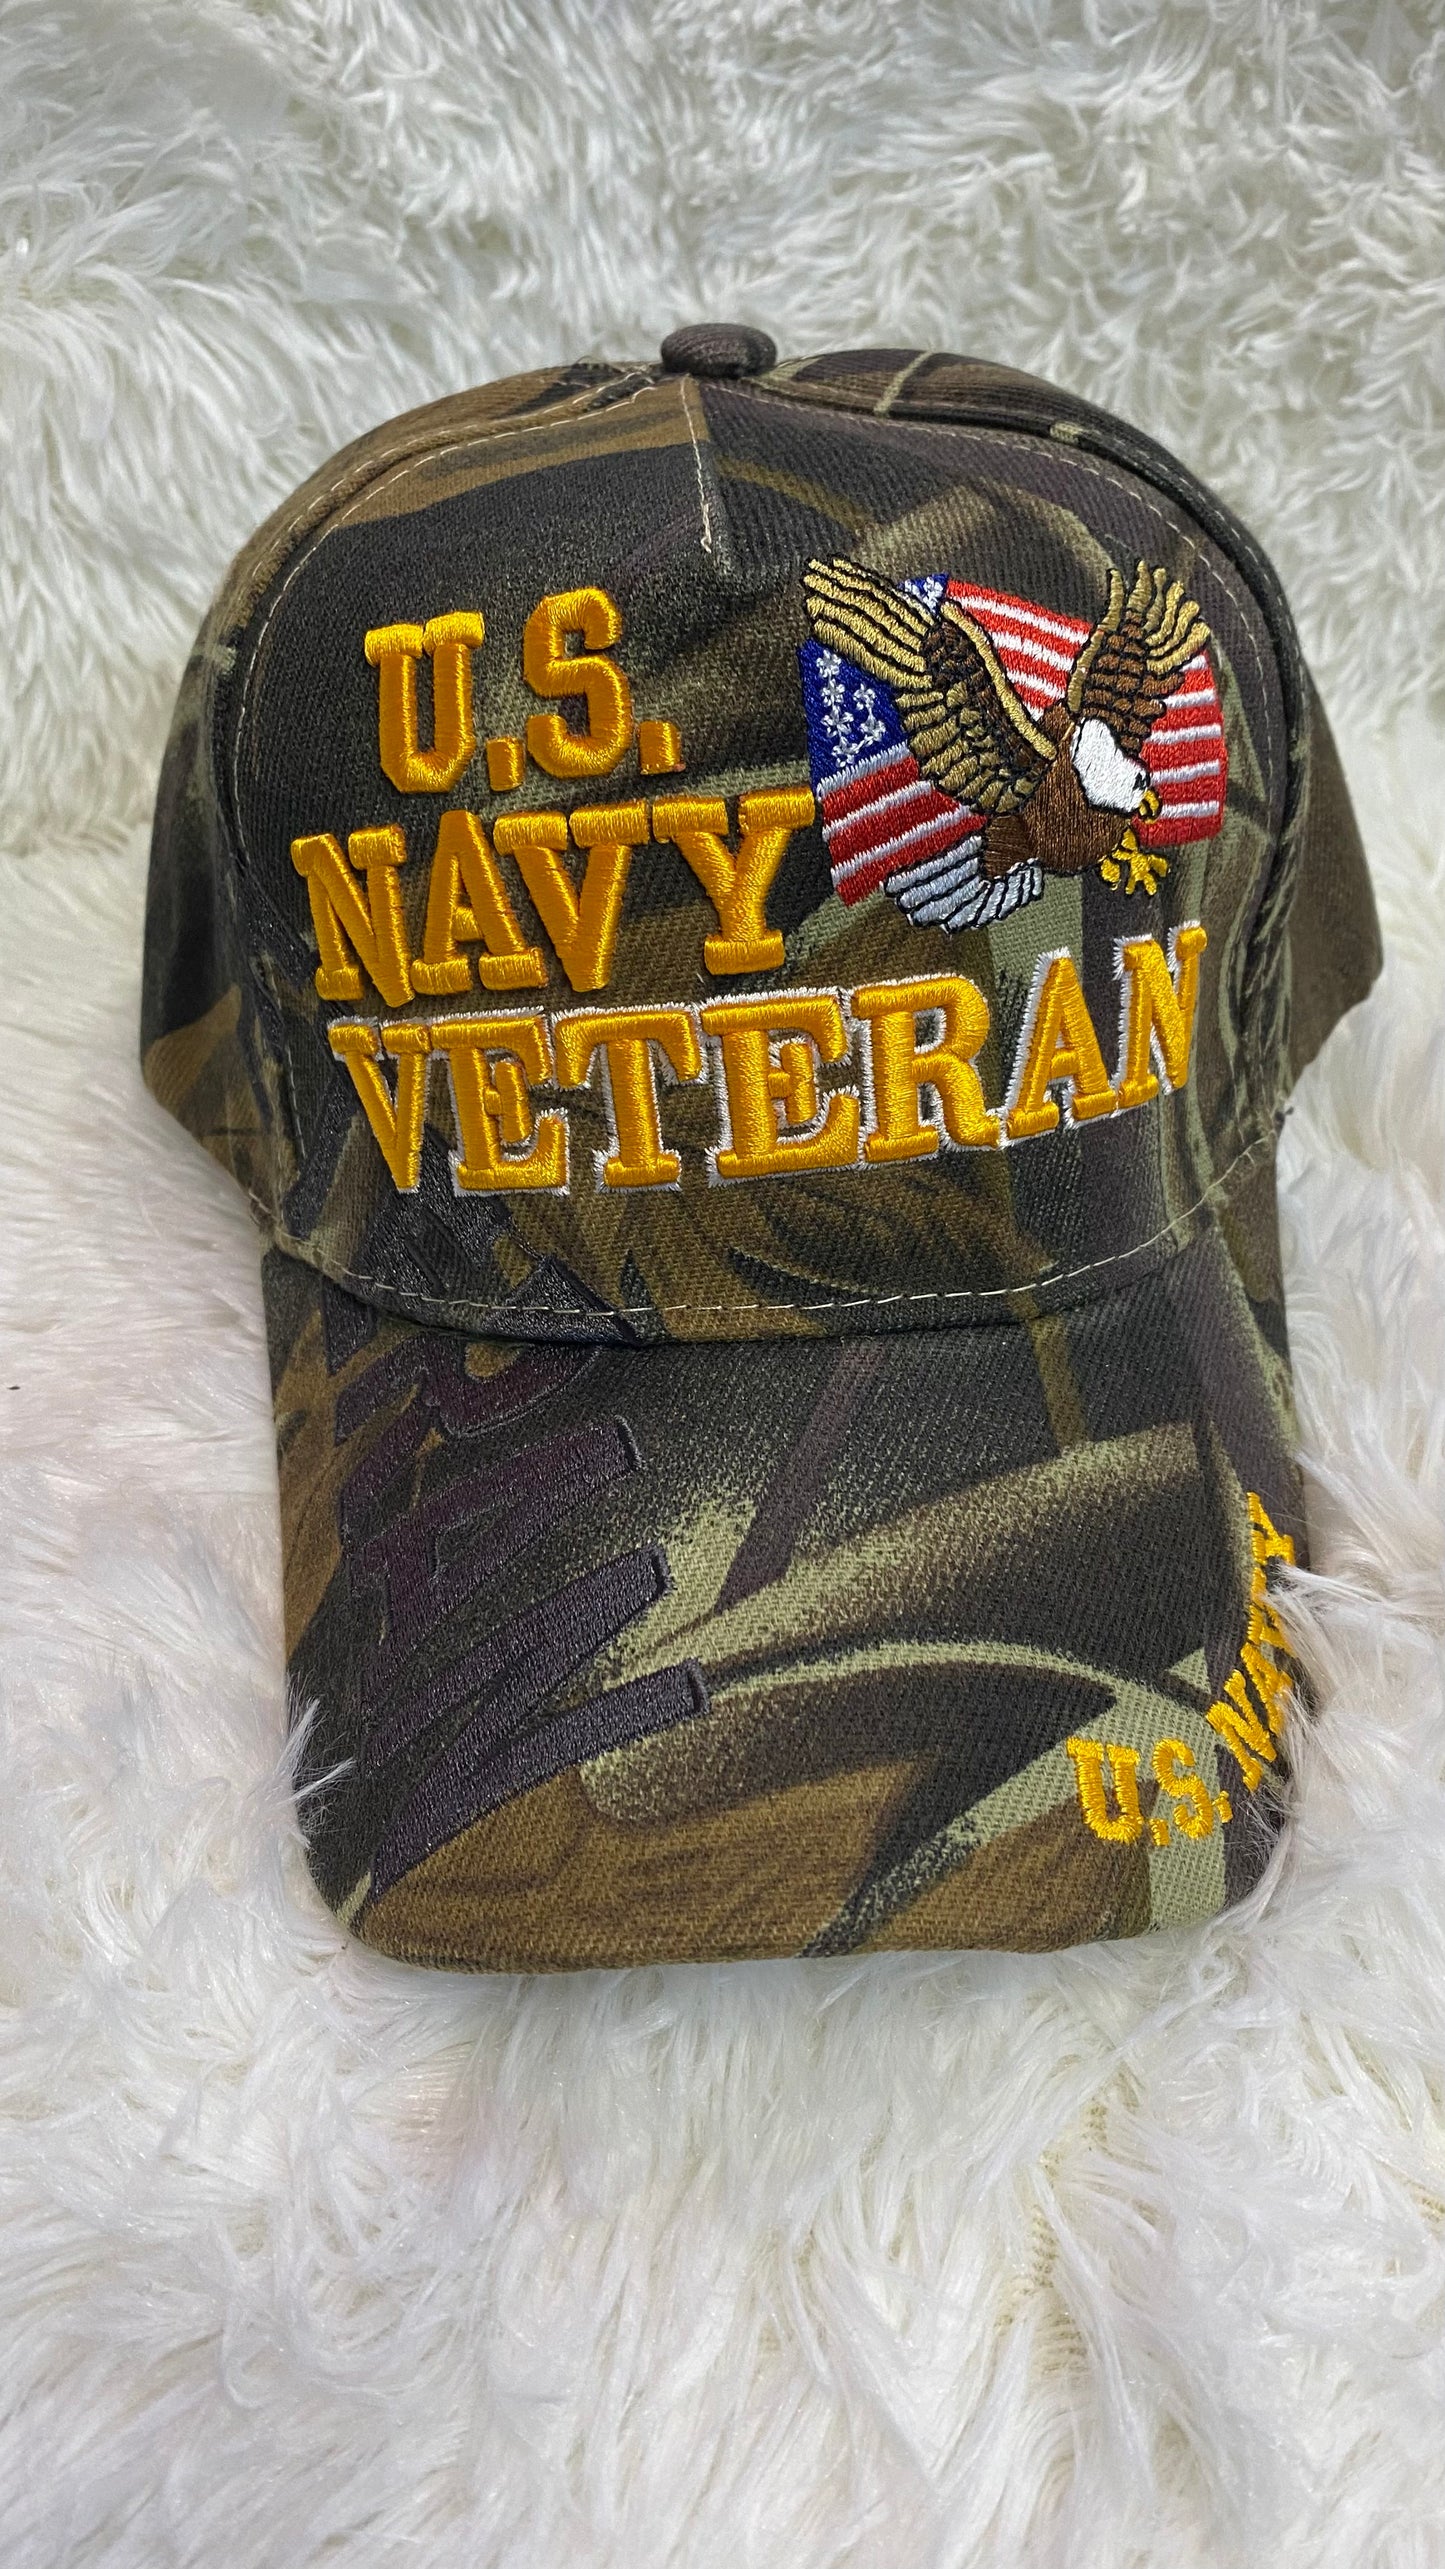 U.S. Navy Veteran Camo Hat